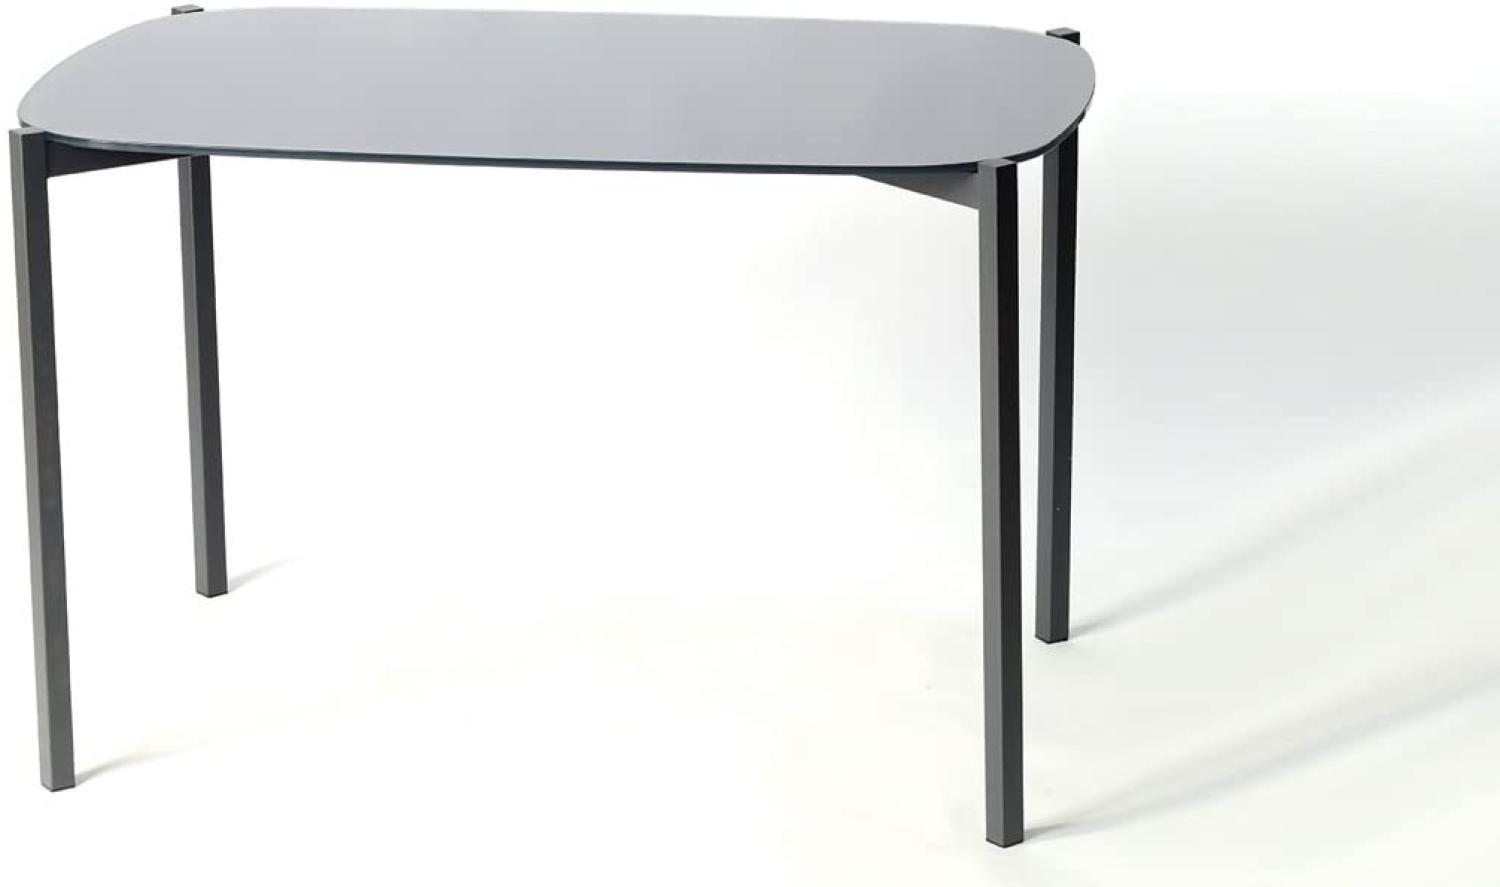 Tisch VERONIQUE Glasplatte Stahlgestell dunkelgrau 120x90 cm Bild 1